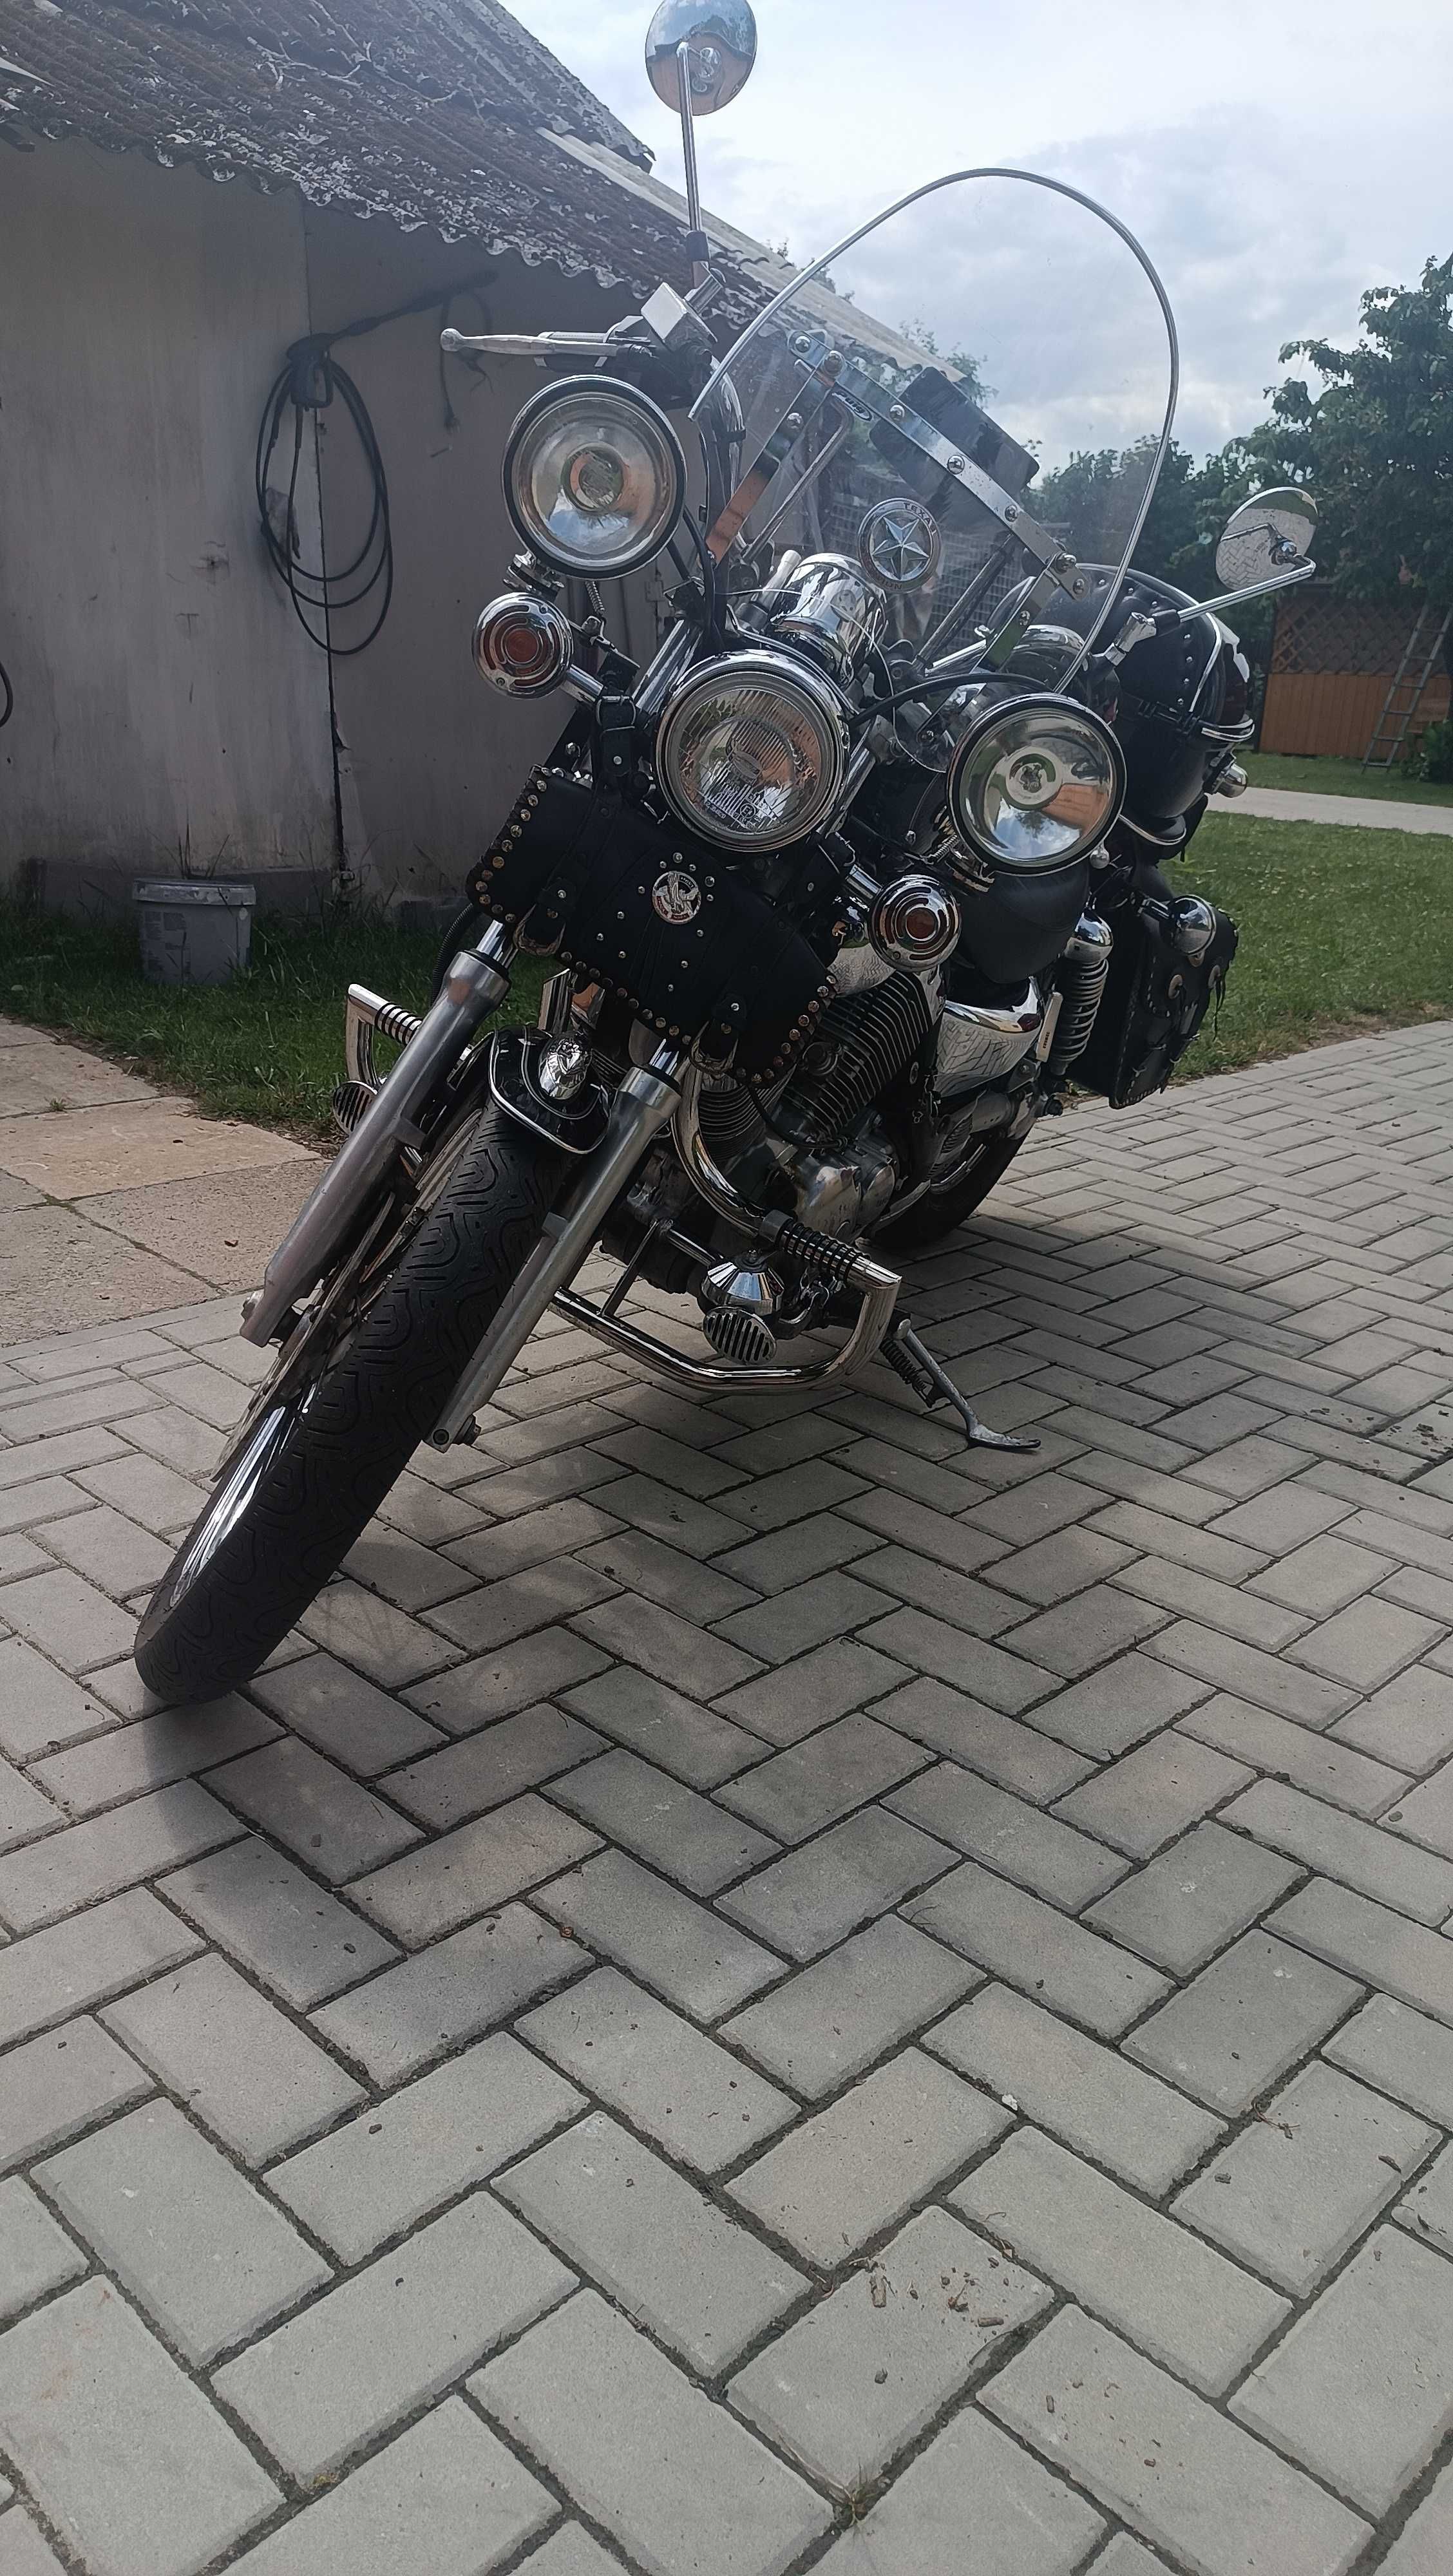 Motocykl Yamaha XV 535 Virago